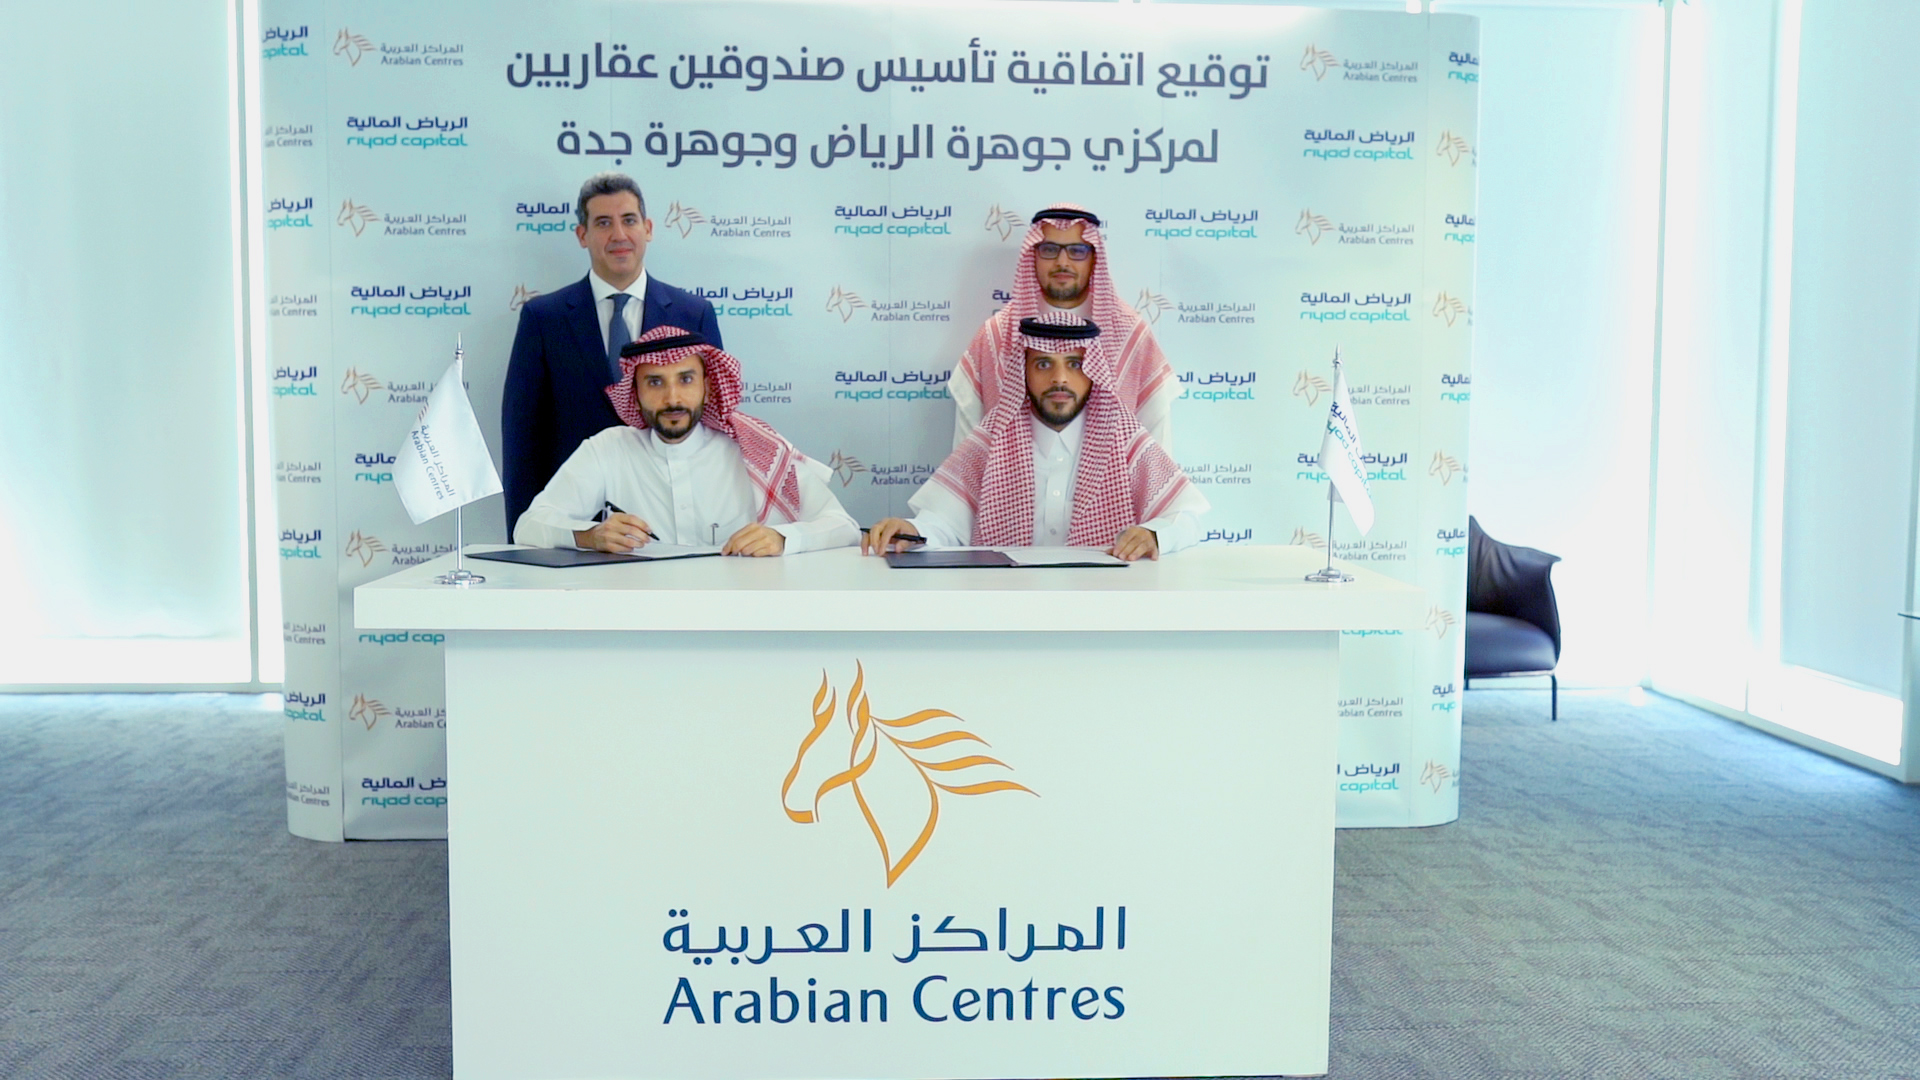 Arabian Centres will work with Riyadh Capital to establish two funds worth SAR6.2 billion